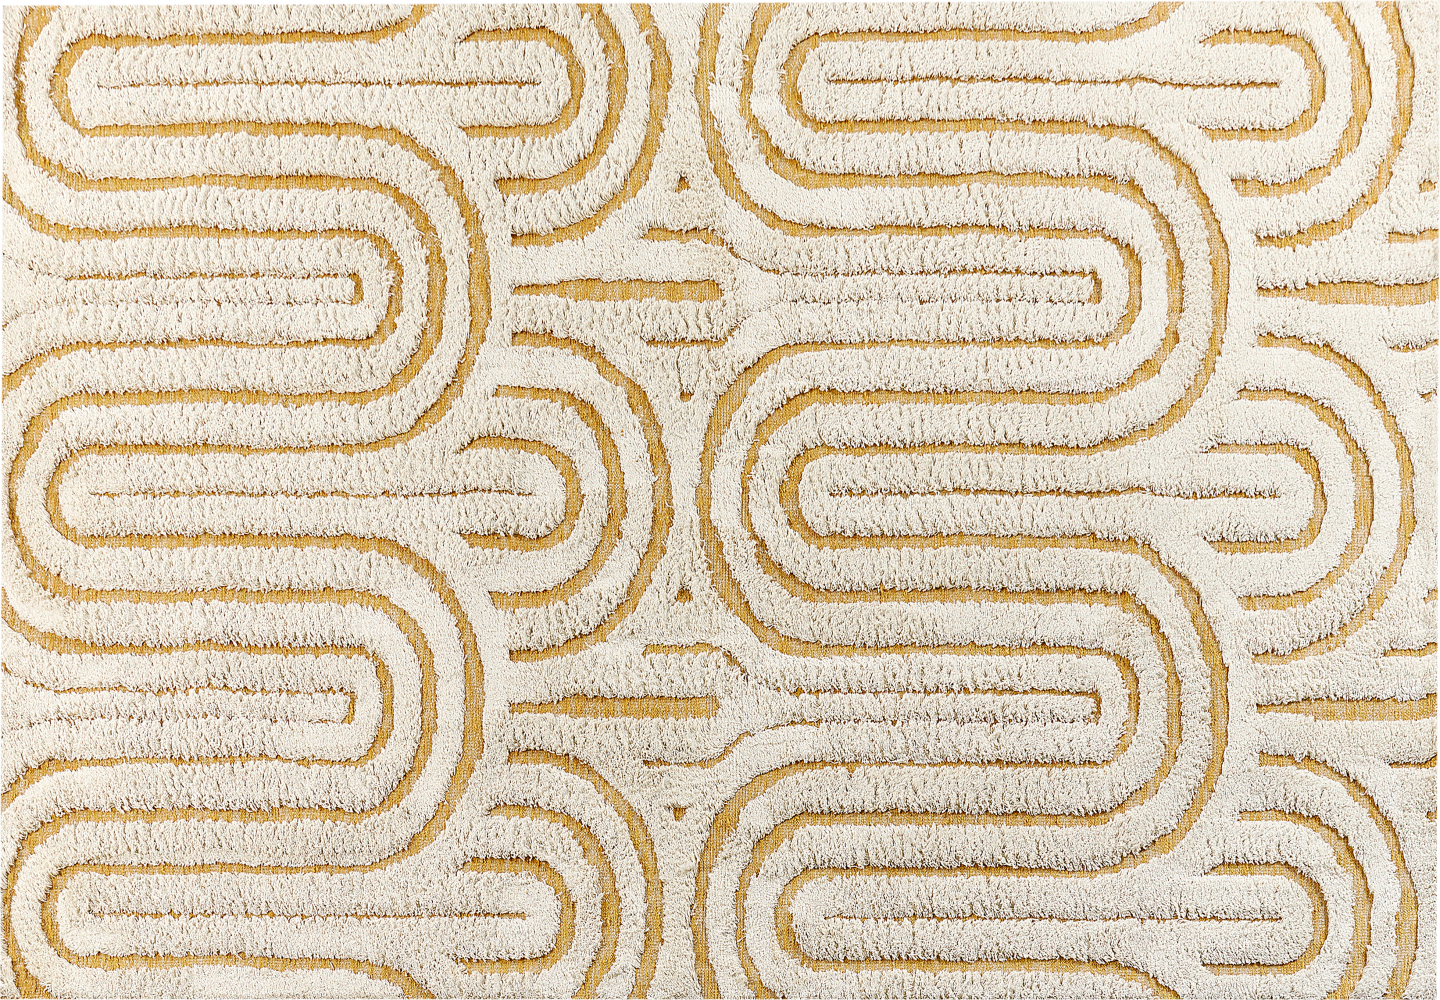 Teppich Baumwolle cremeweiß gelb 160 x 230 cm abstraktes Muster PERAI Bild 1